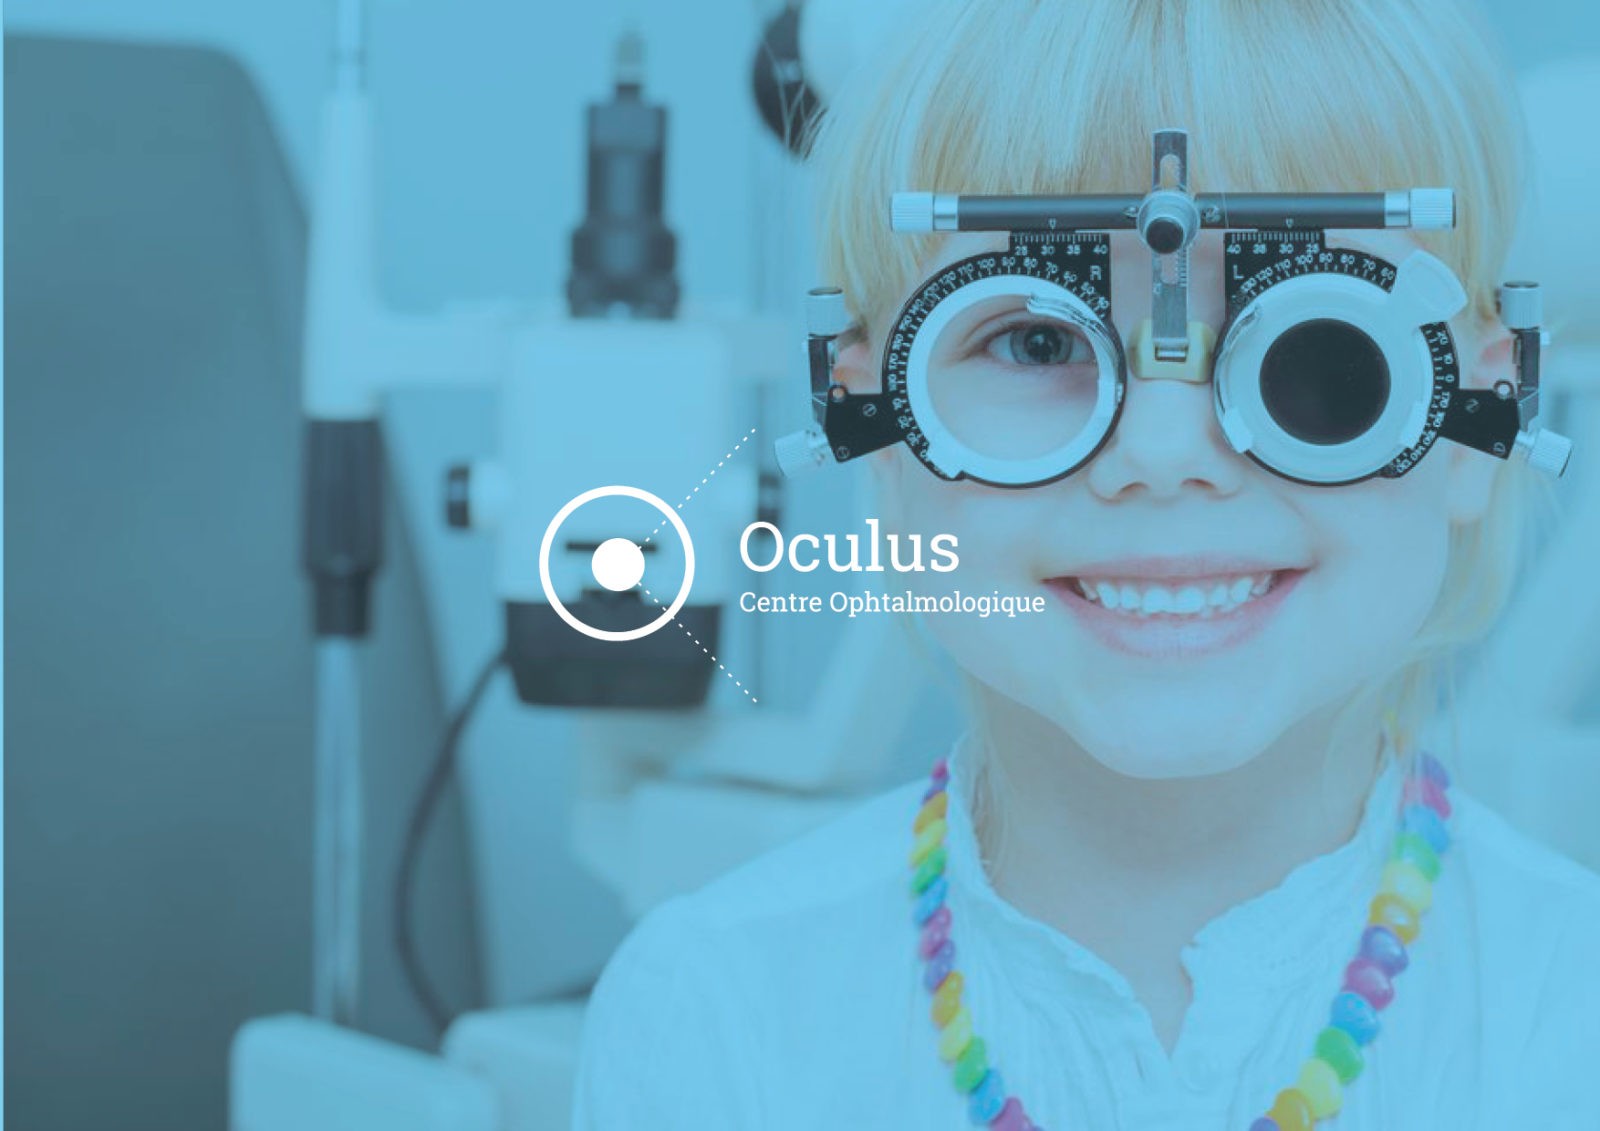 Refonte du site internet et communication visuelle pour le centre Ophtalmologique Oculus en Savoie